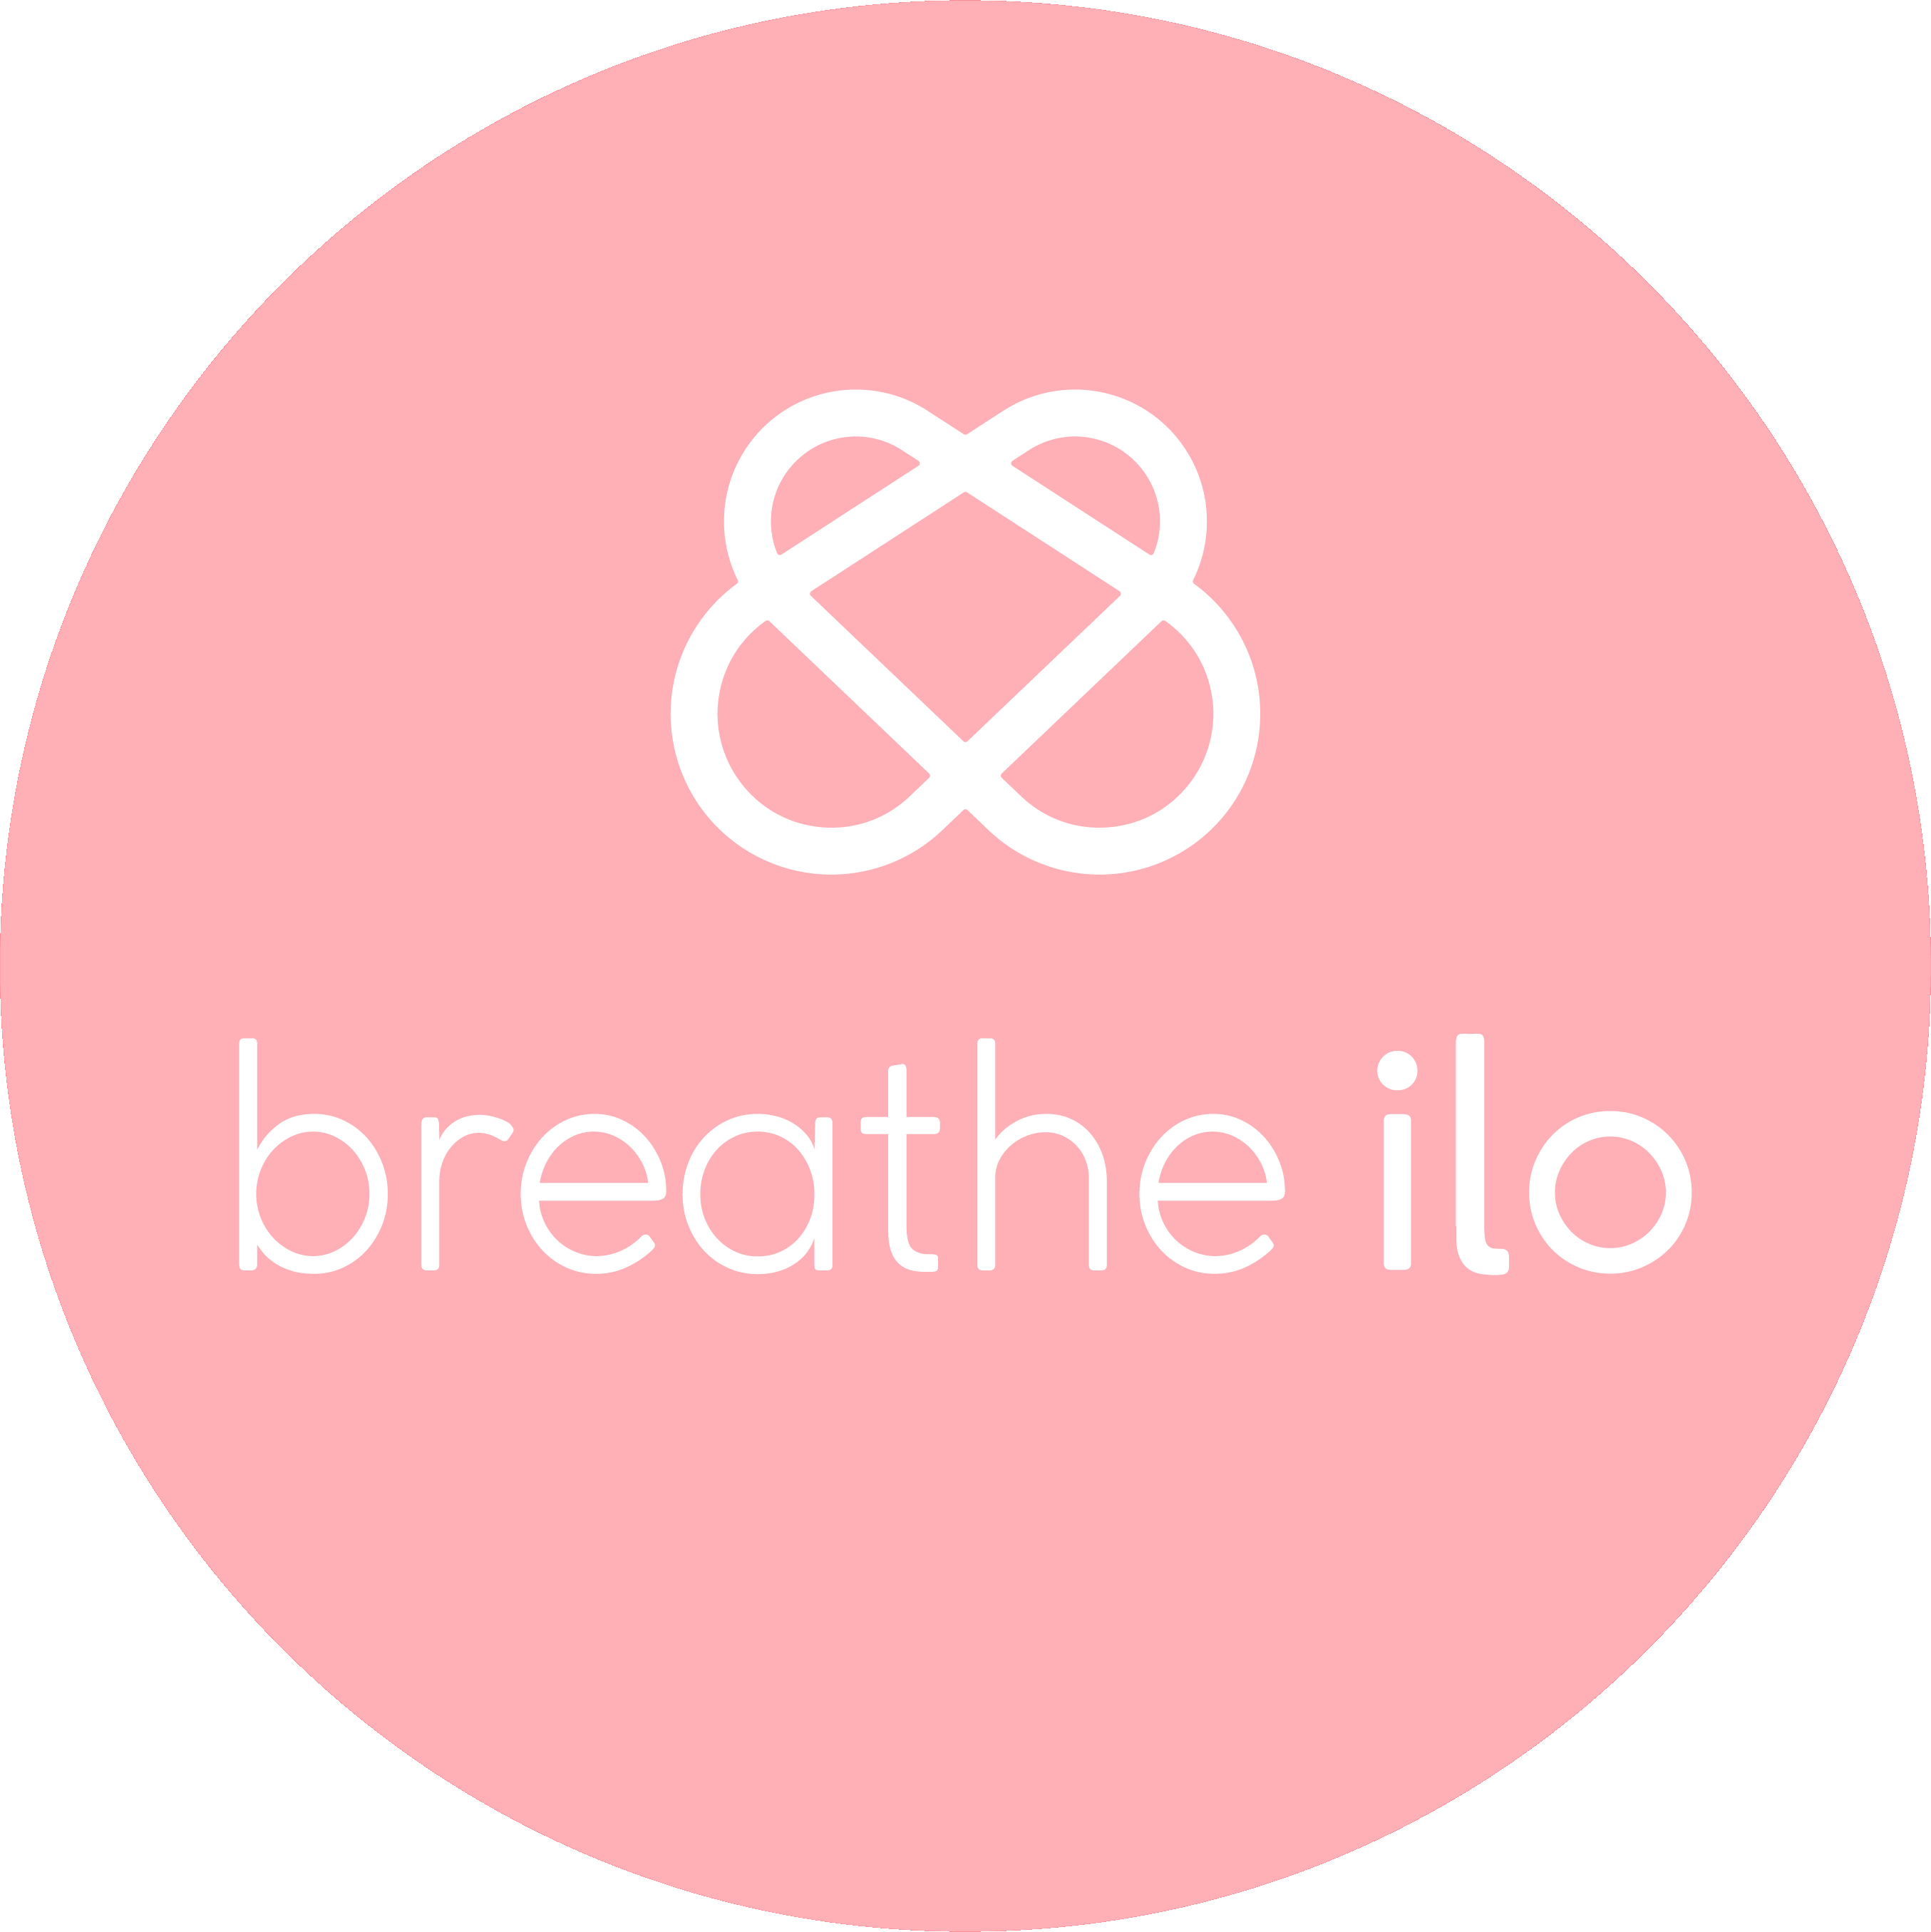 Logo Breathe ilo